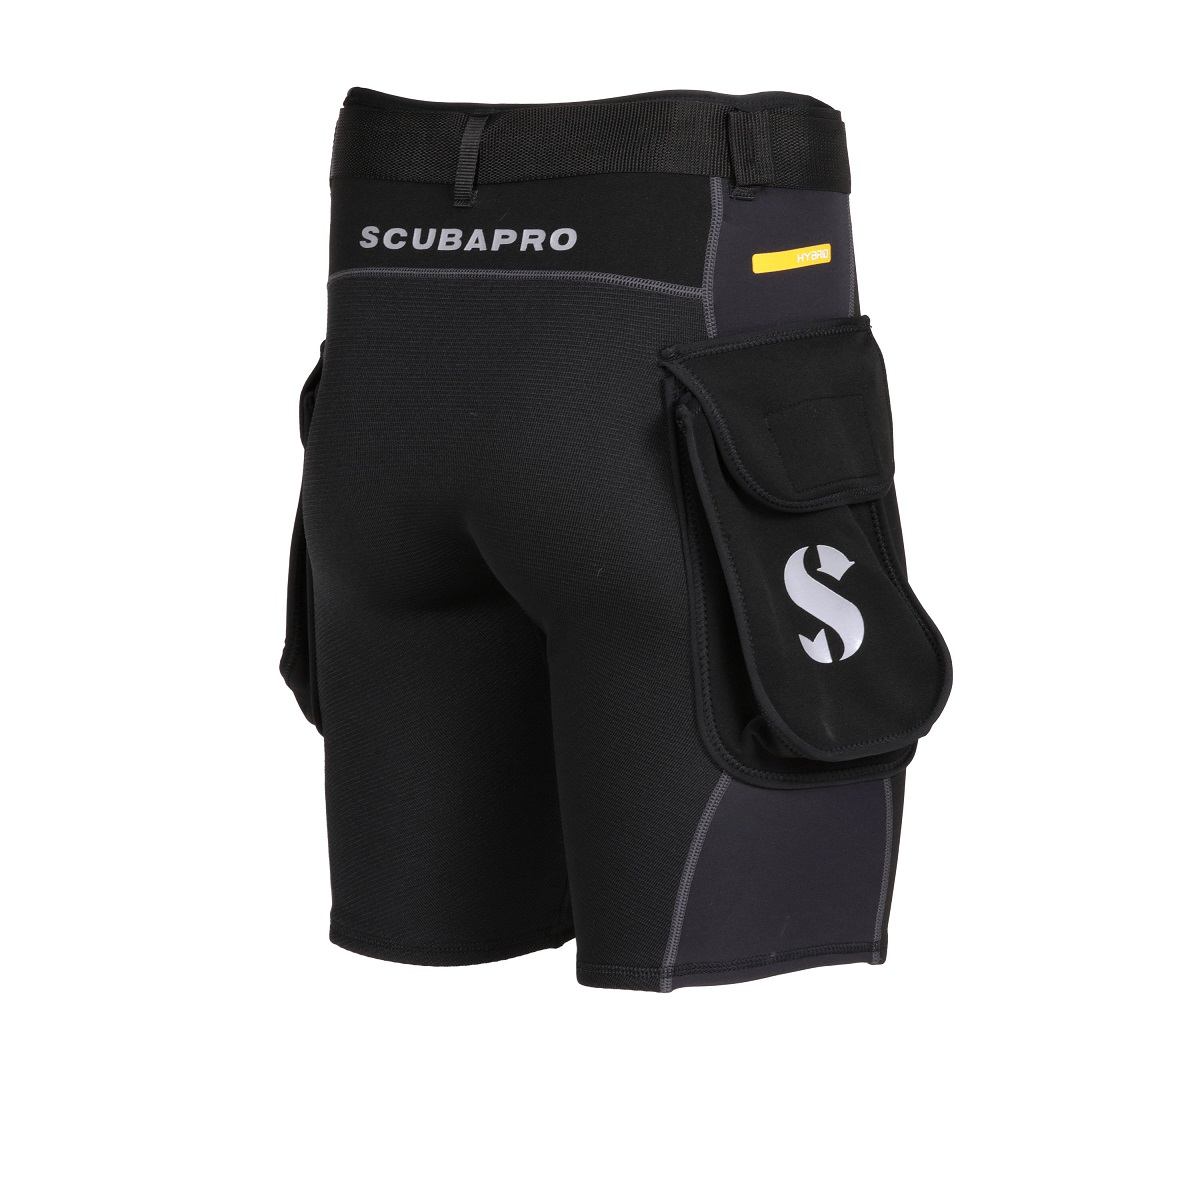 带工装口袋的 Scubapro 混合短裤